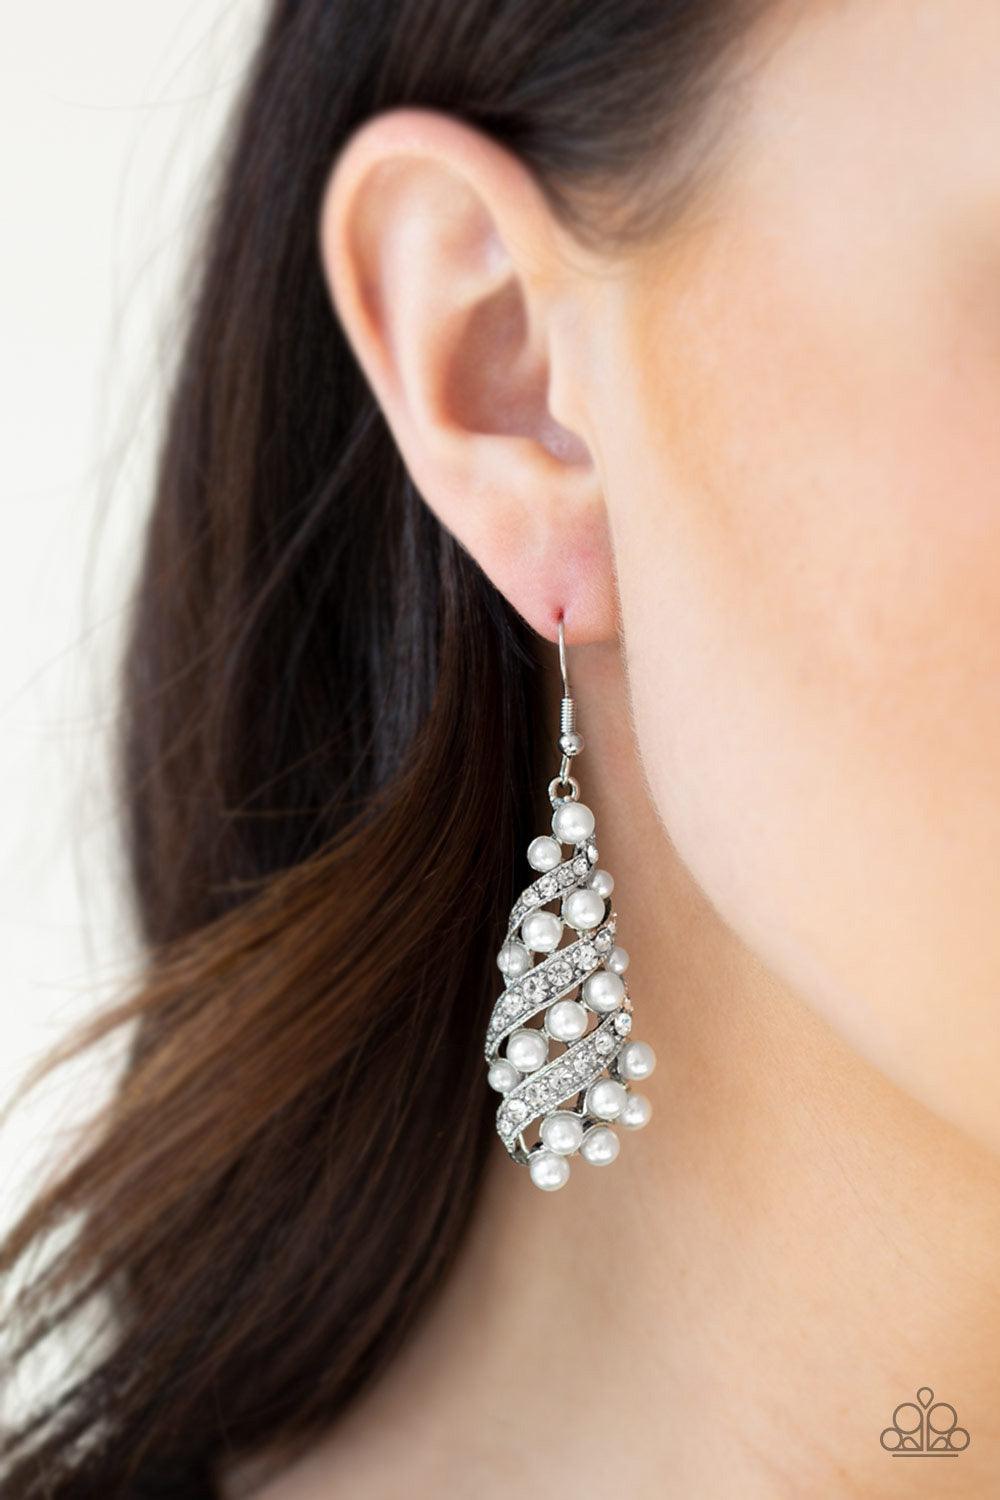  Ballroom Waltz White Earrings - Jewelry by Bretta